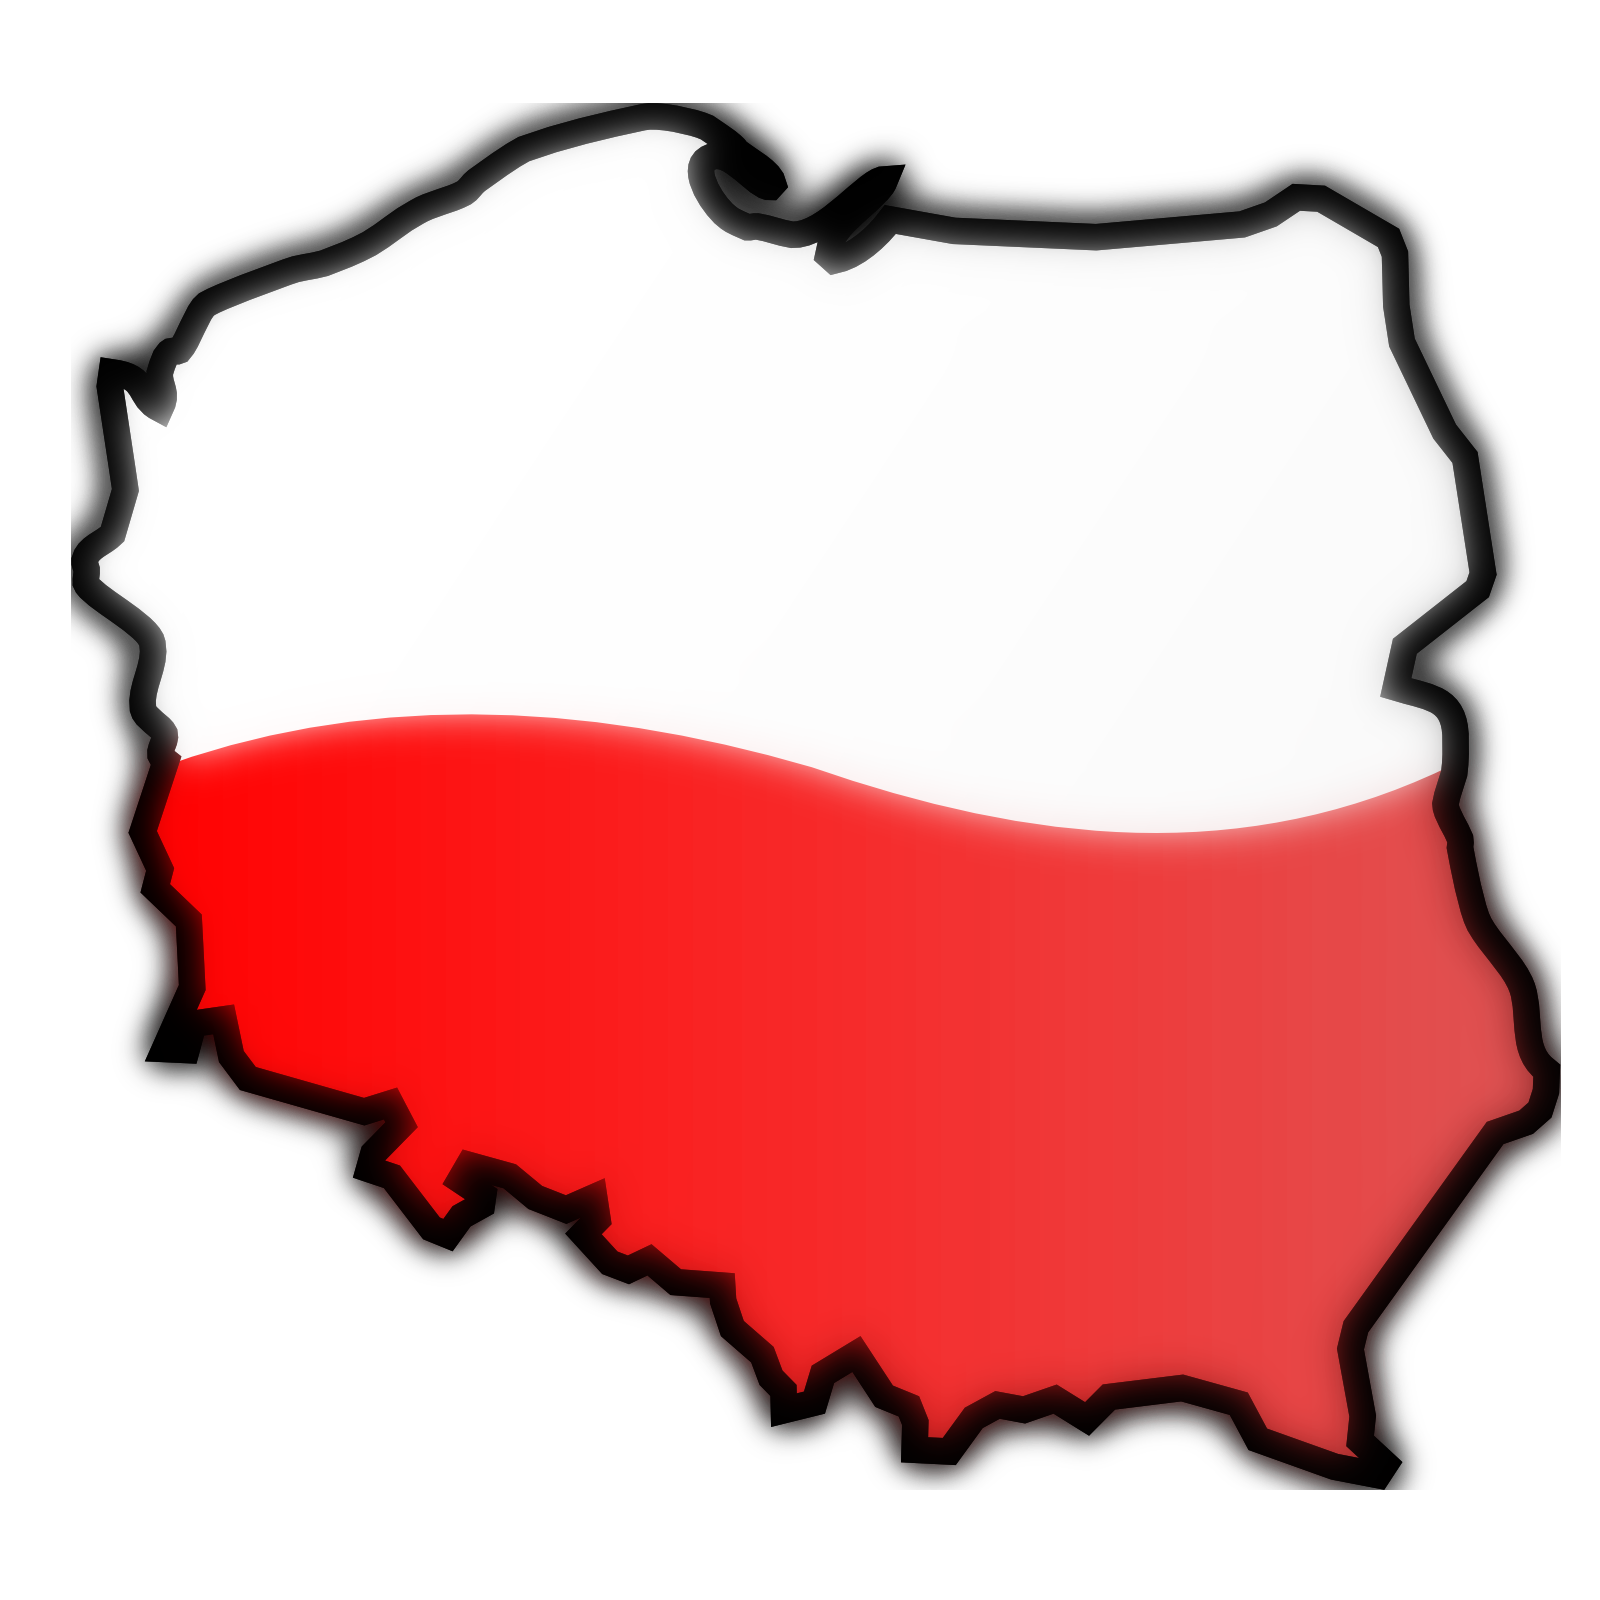 obr-zek-klipart-mapa-polska-v-rozli-en-1600x1600-px-ke-sta-en-zdarma